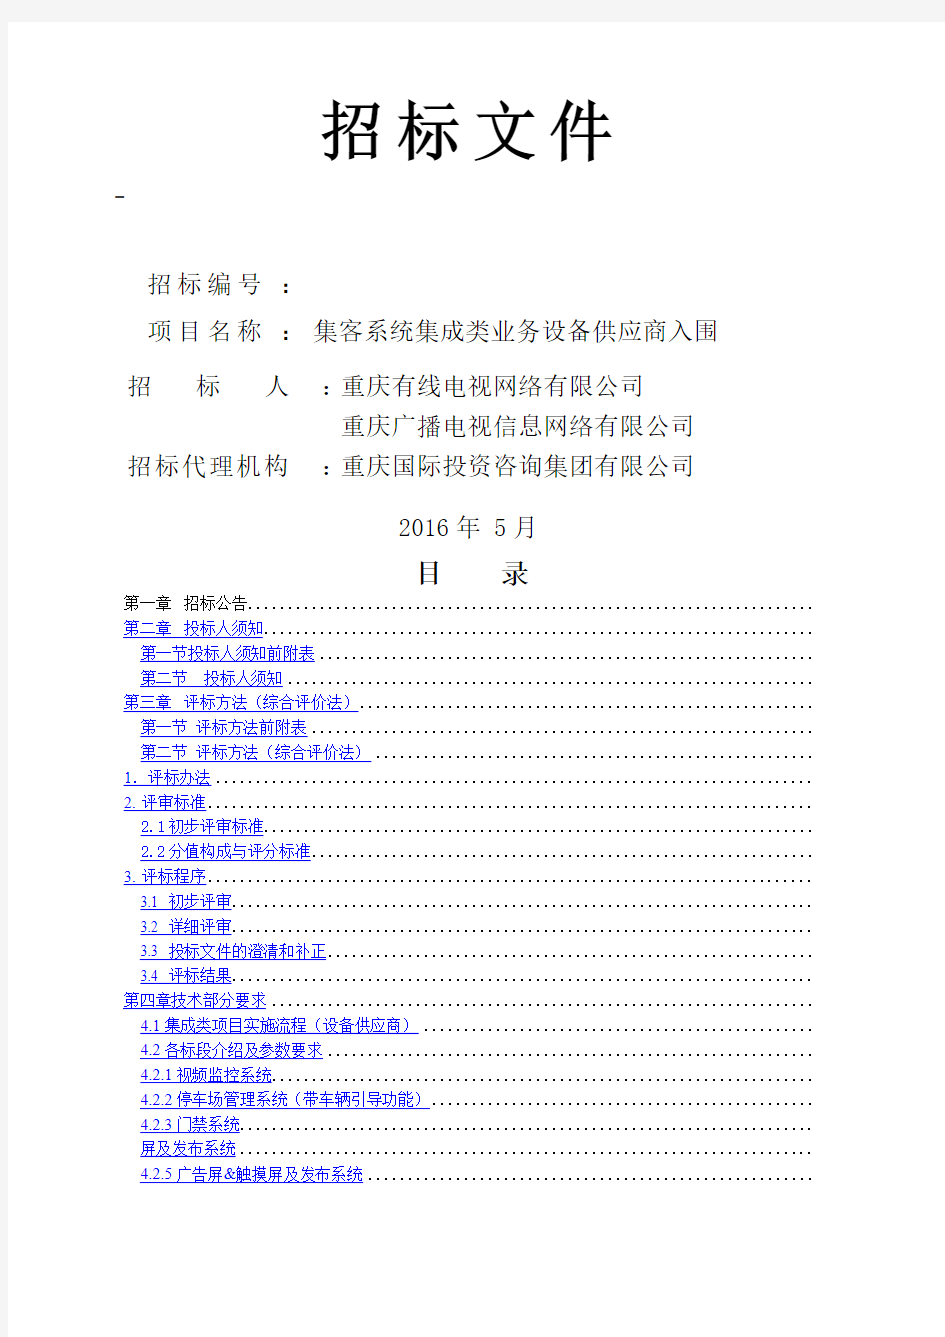 重庆有线设备供应商入围招标文件(挂网版本)